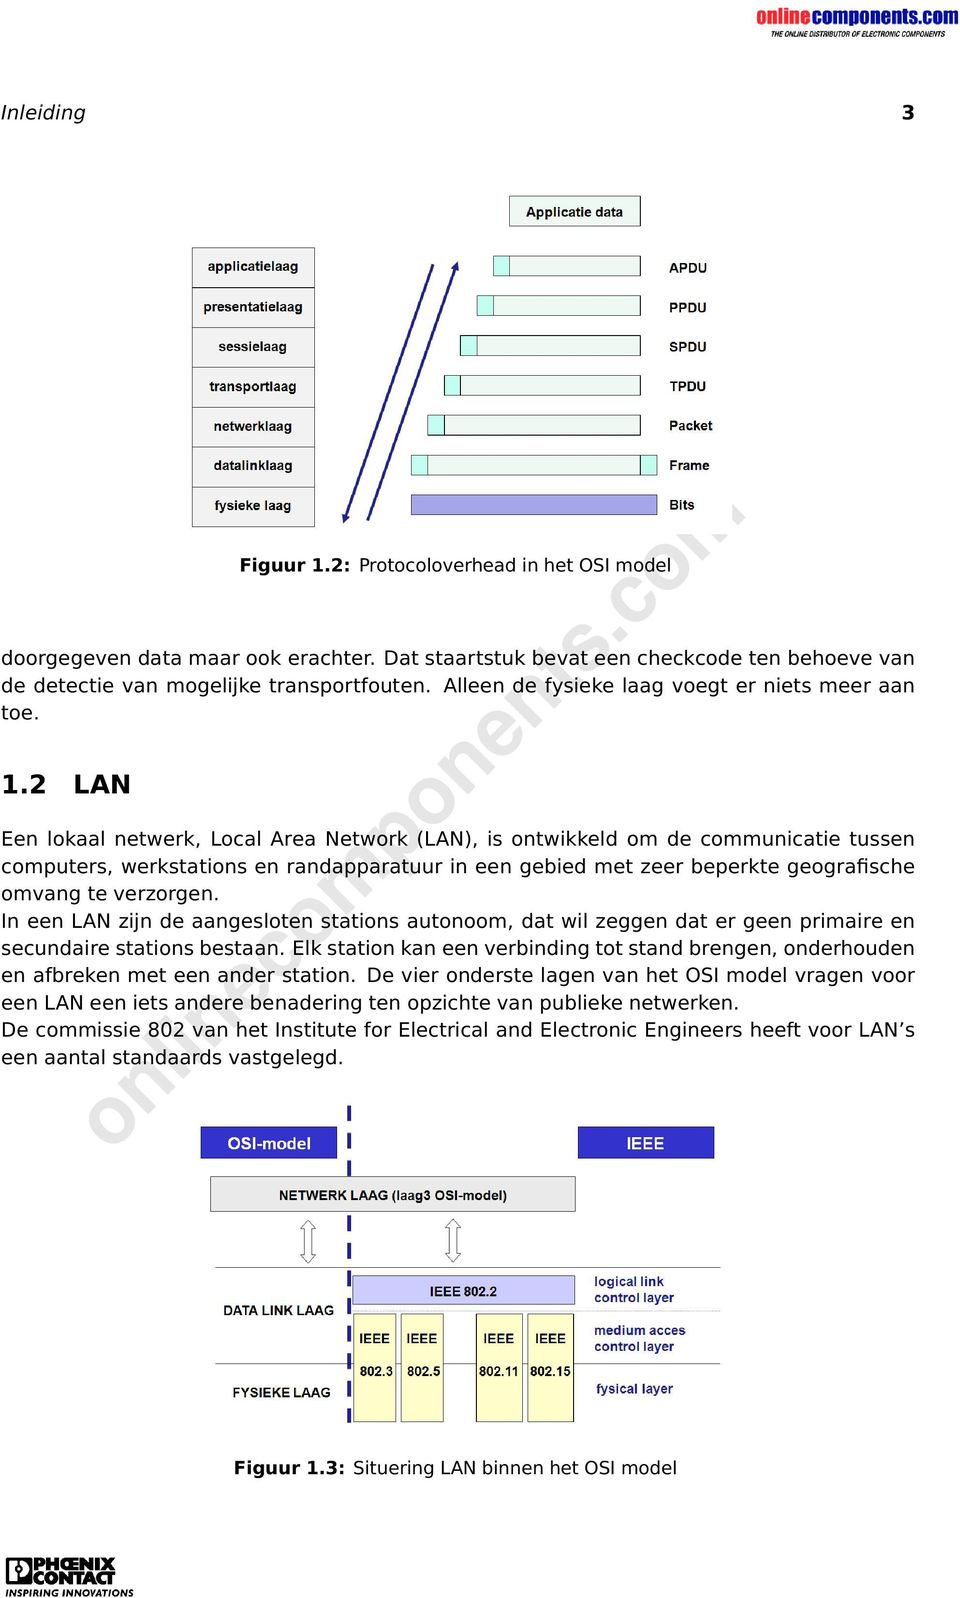 2 LAN Een lokaal netwerk, Local Area Network (LAN), is ontwikkeld om de communicatie tussen computers, werkstations en randapparatuur in een gebied met zeer beperkte geografische omvang te verzorgen.